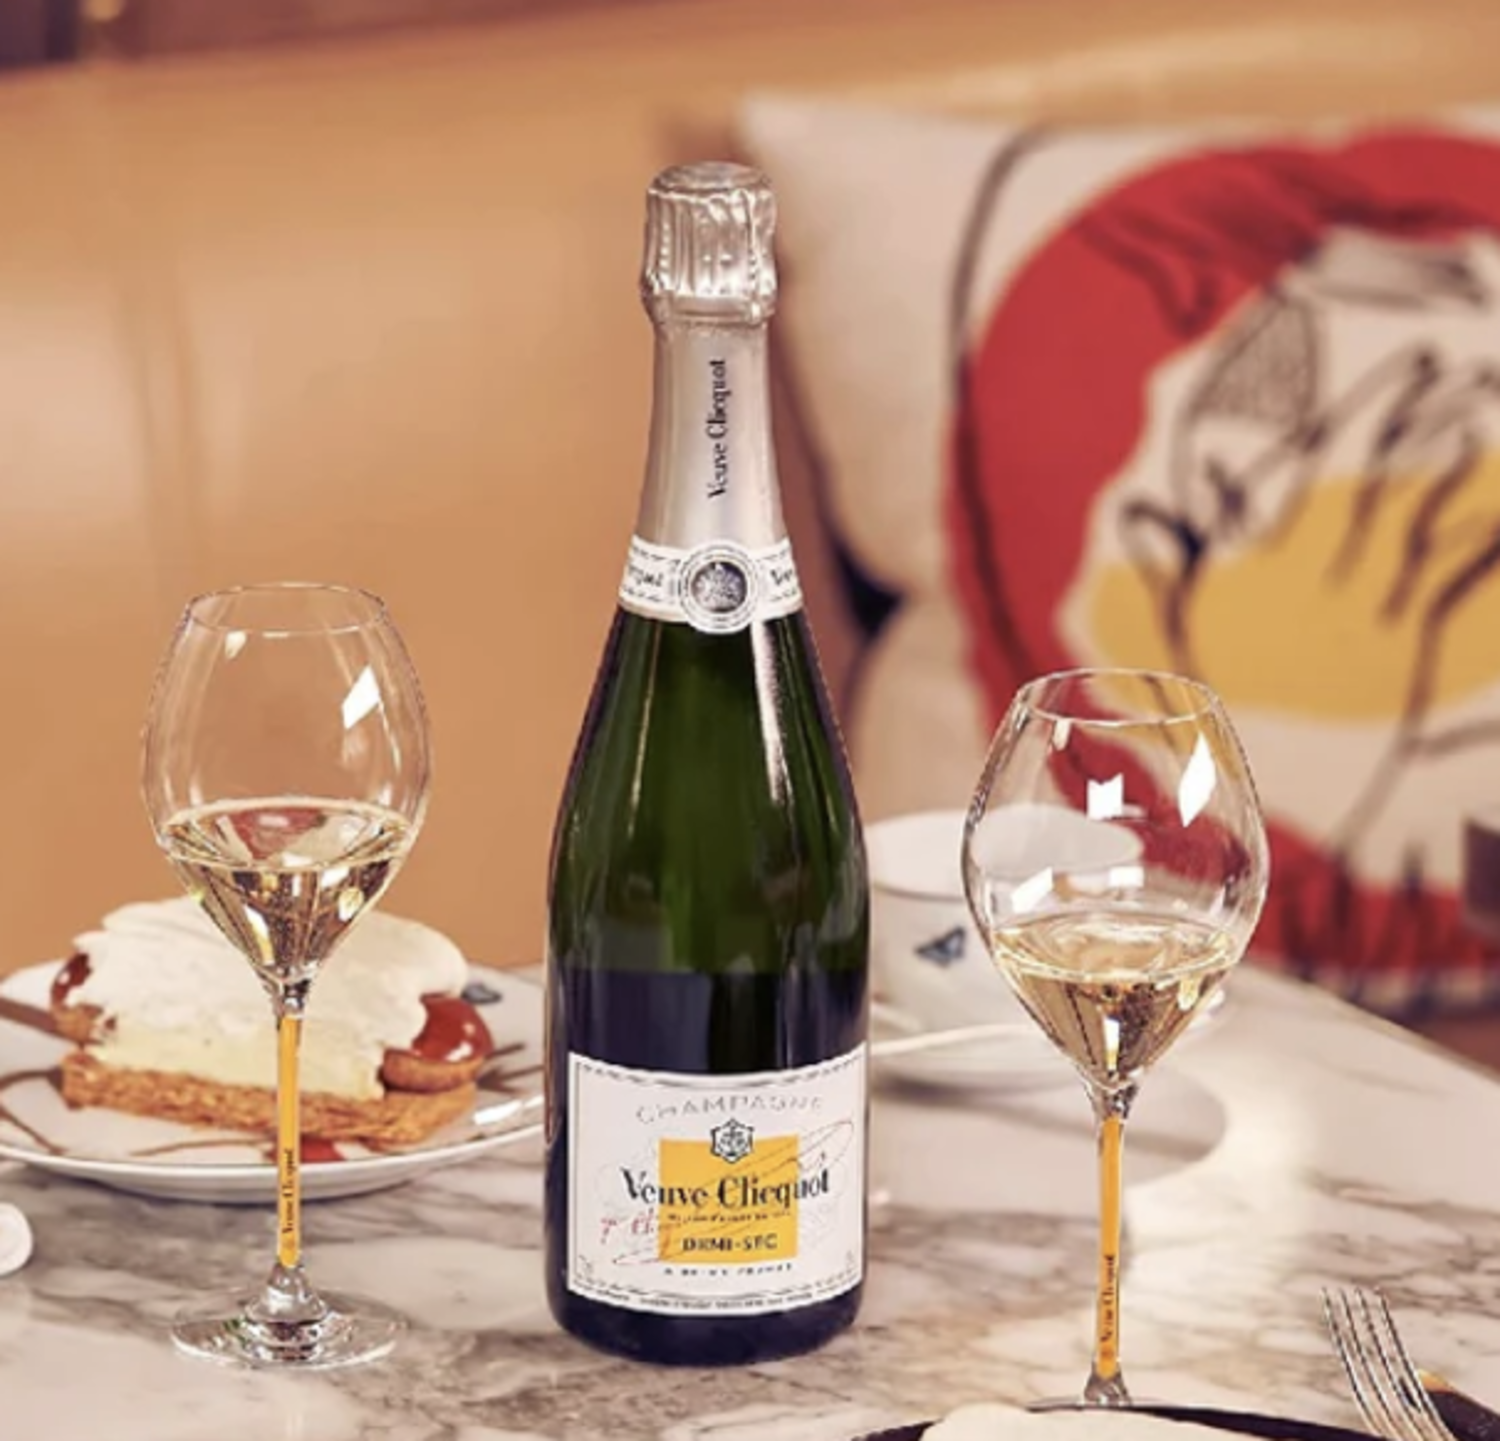 Champagne Demi Sec, Veuve Clicquot, FR, NV - Michael's Wine Cellar